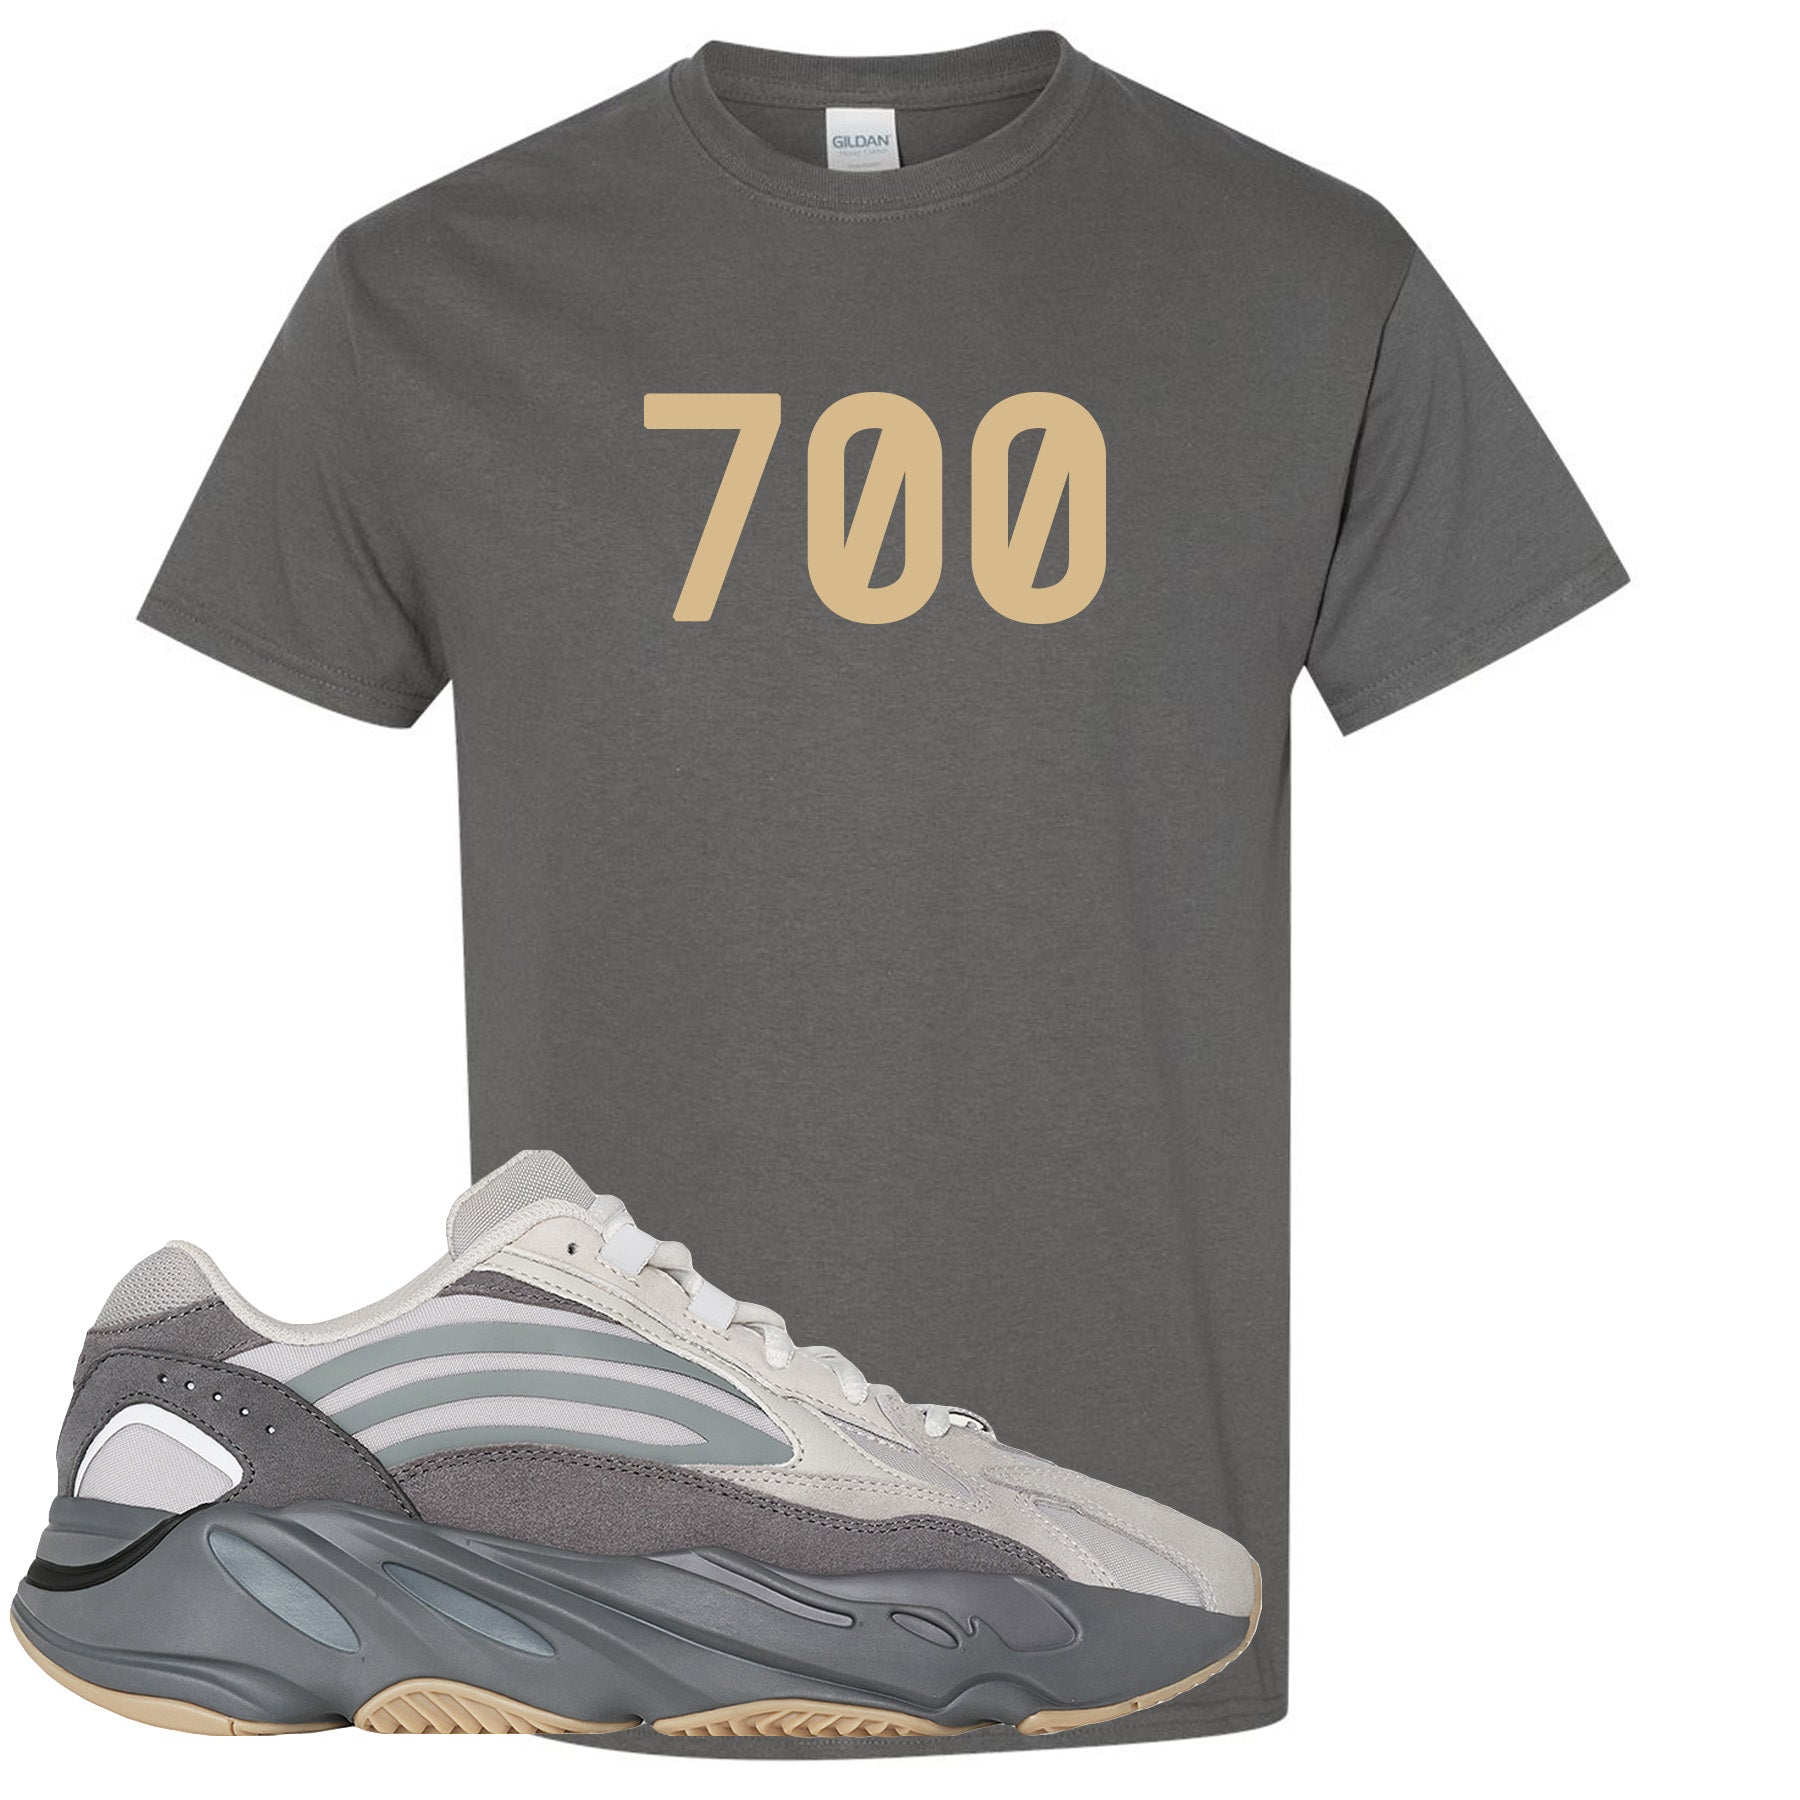 yeezy boost 700 shirt